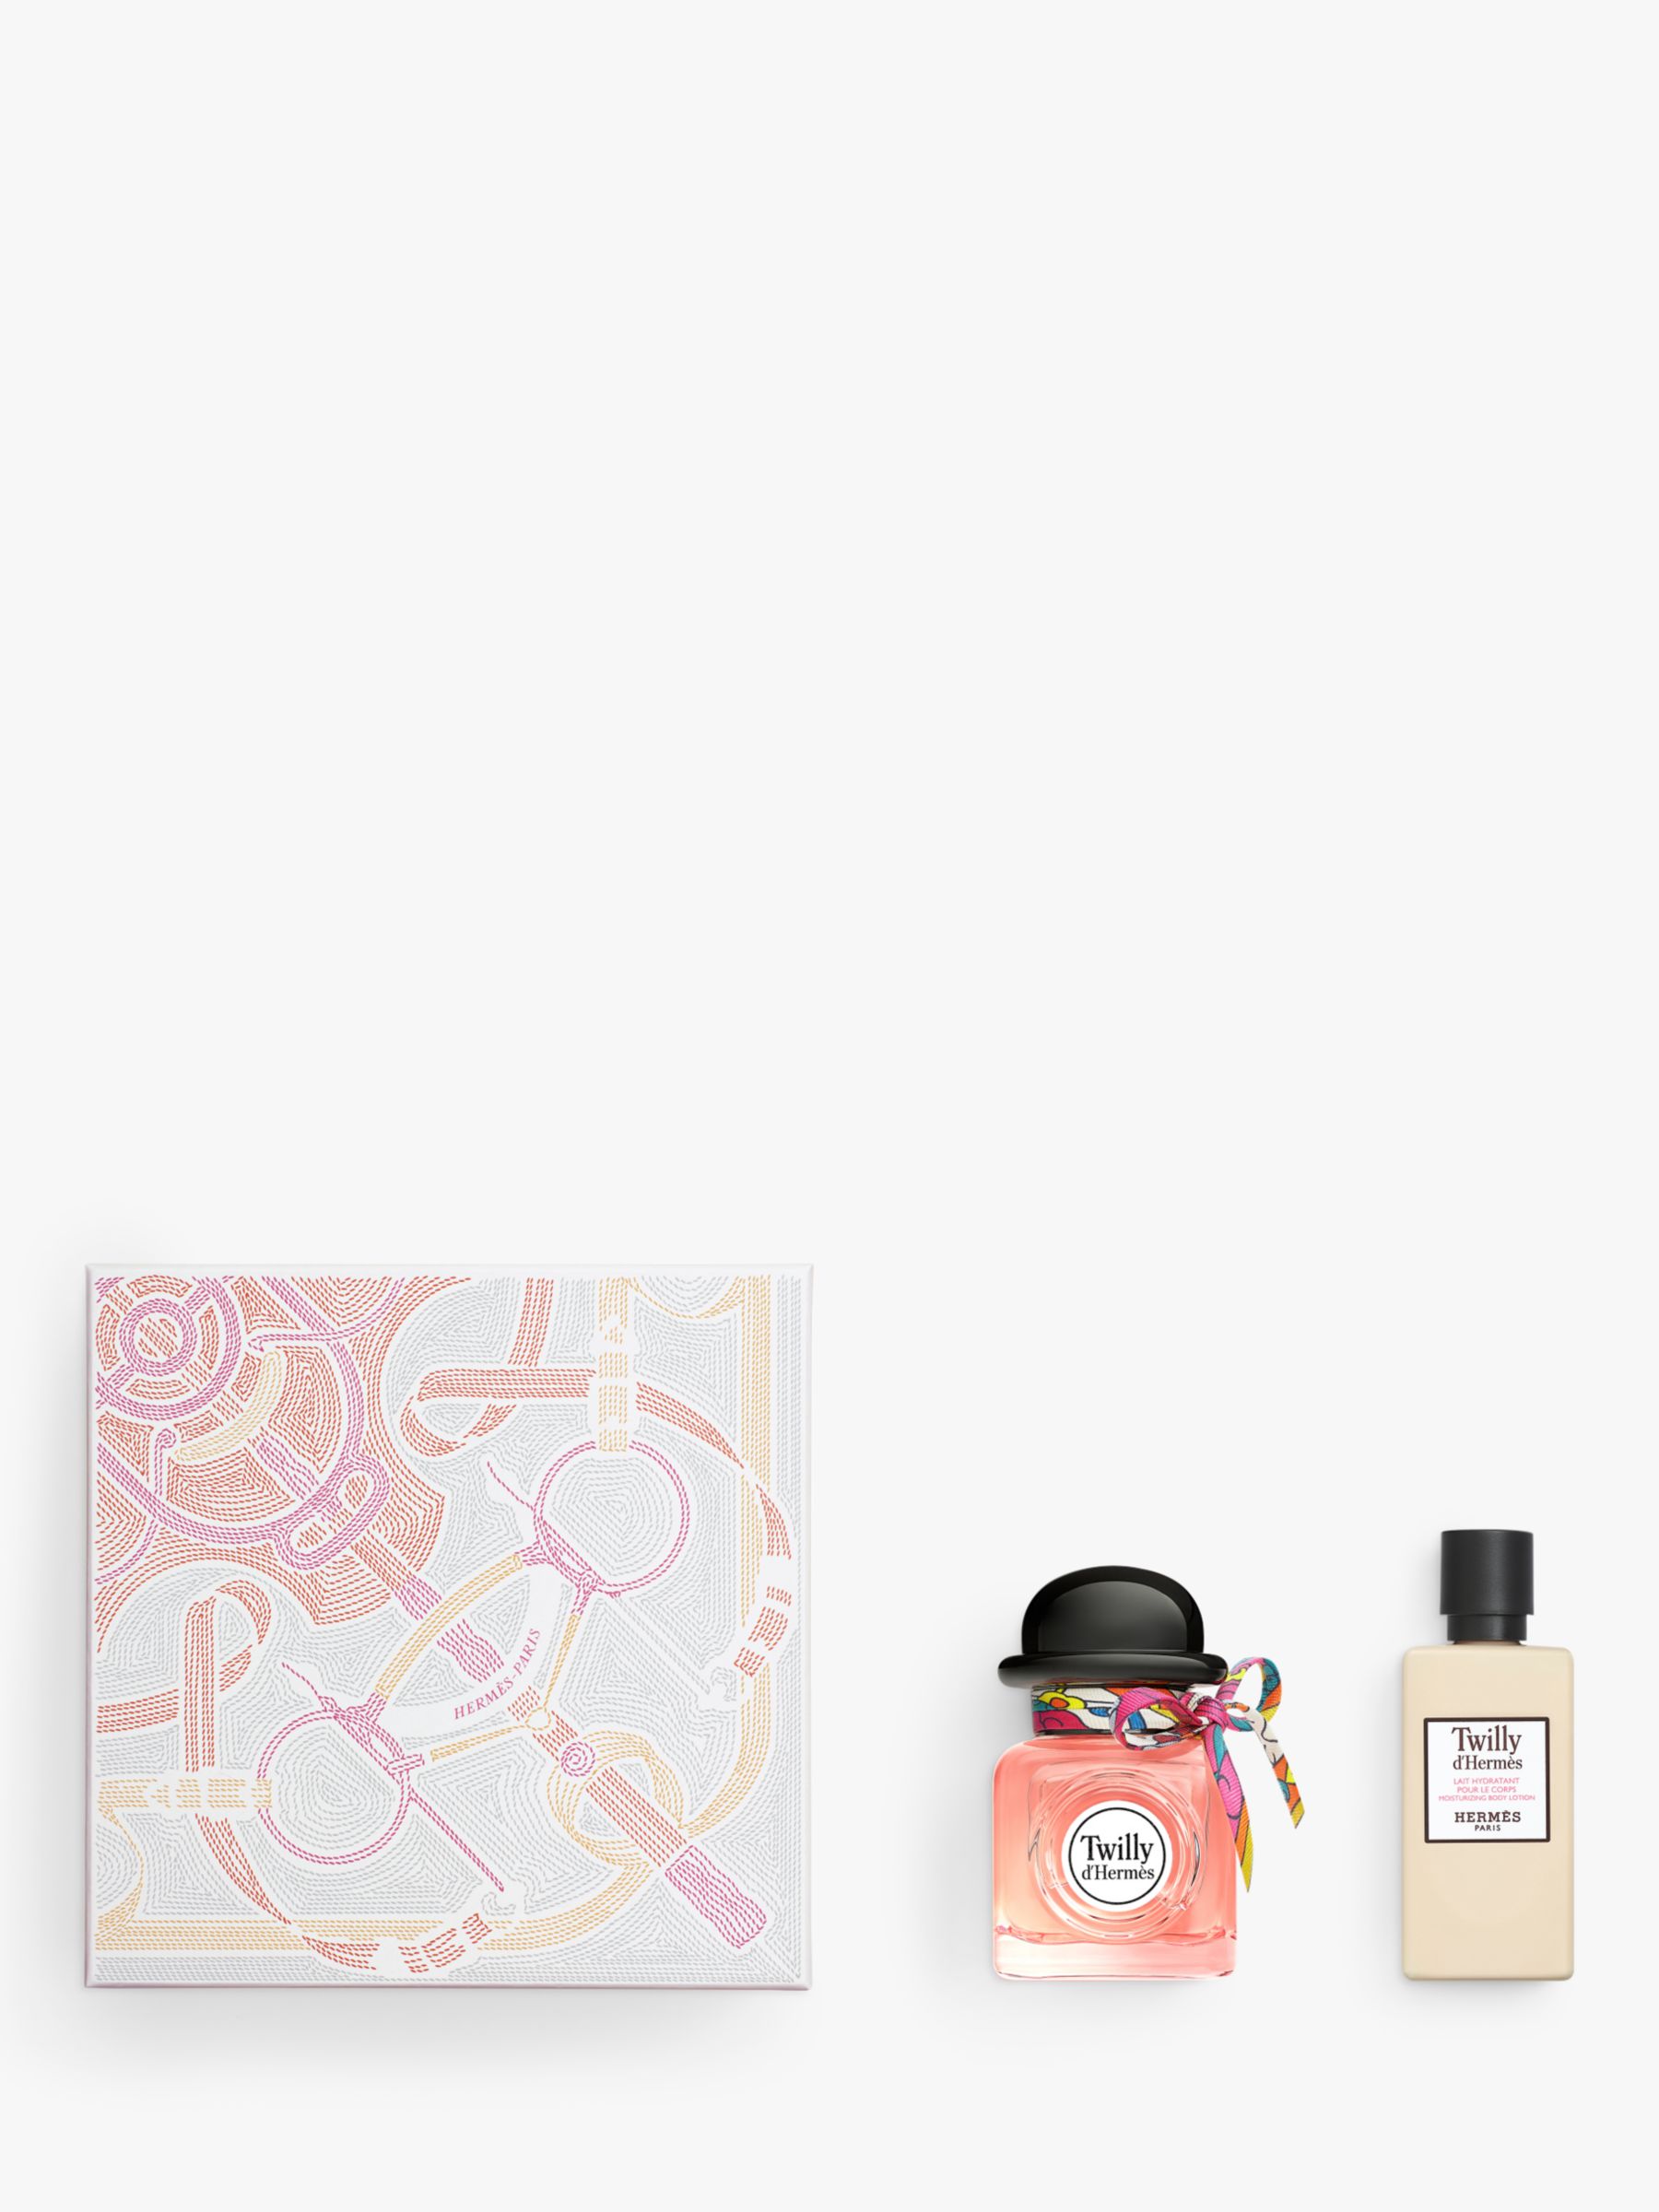 Hermès Twilly d’Hermès Eau de Parfum 50ml Fragrance Gift Set 2